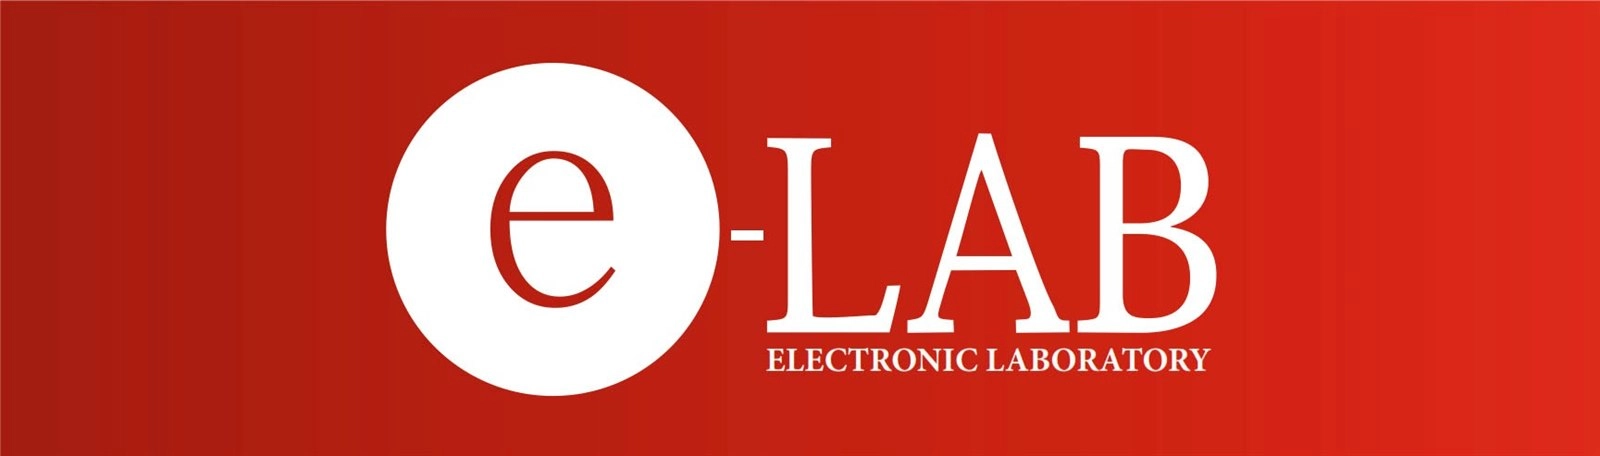 Аккумуляторы E-LAB доступны в продаже AKBMOSCOW - сеть магазинов аккумуляторов